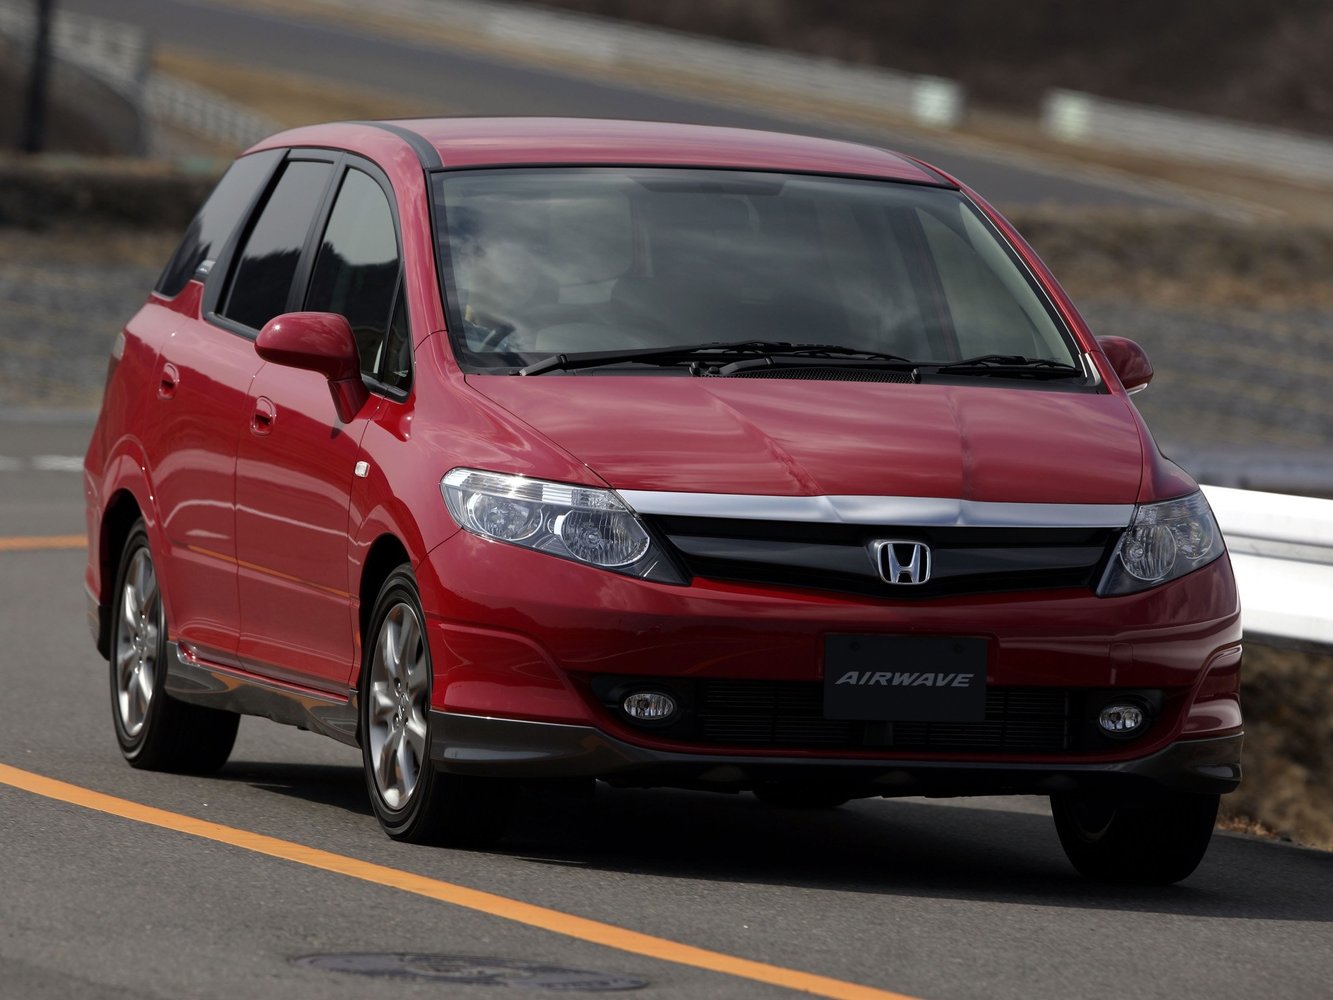 универсал Honda Airwave 2004 - 2010г выпуска модификация 1.5 CVT (110 л.с.)